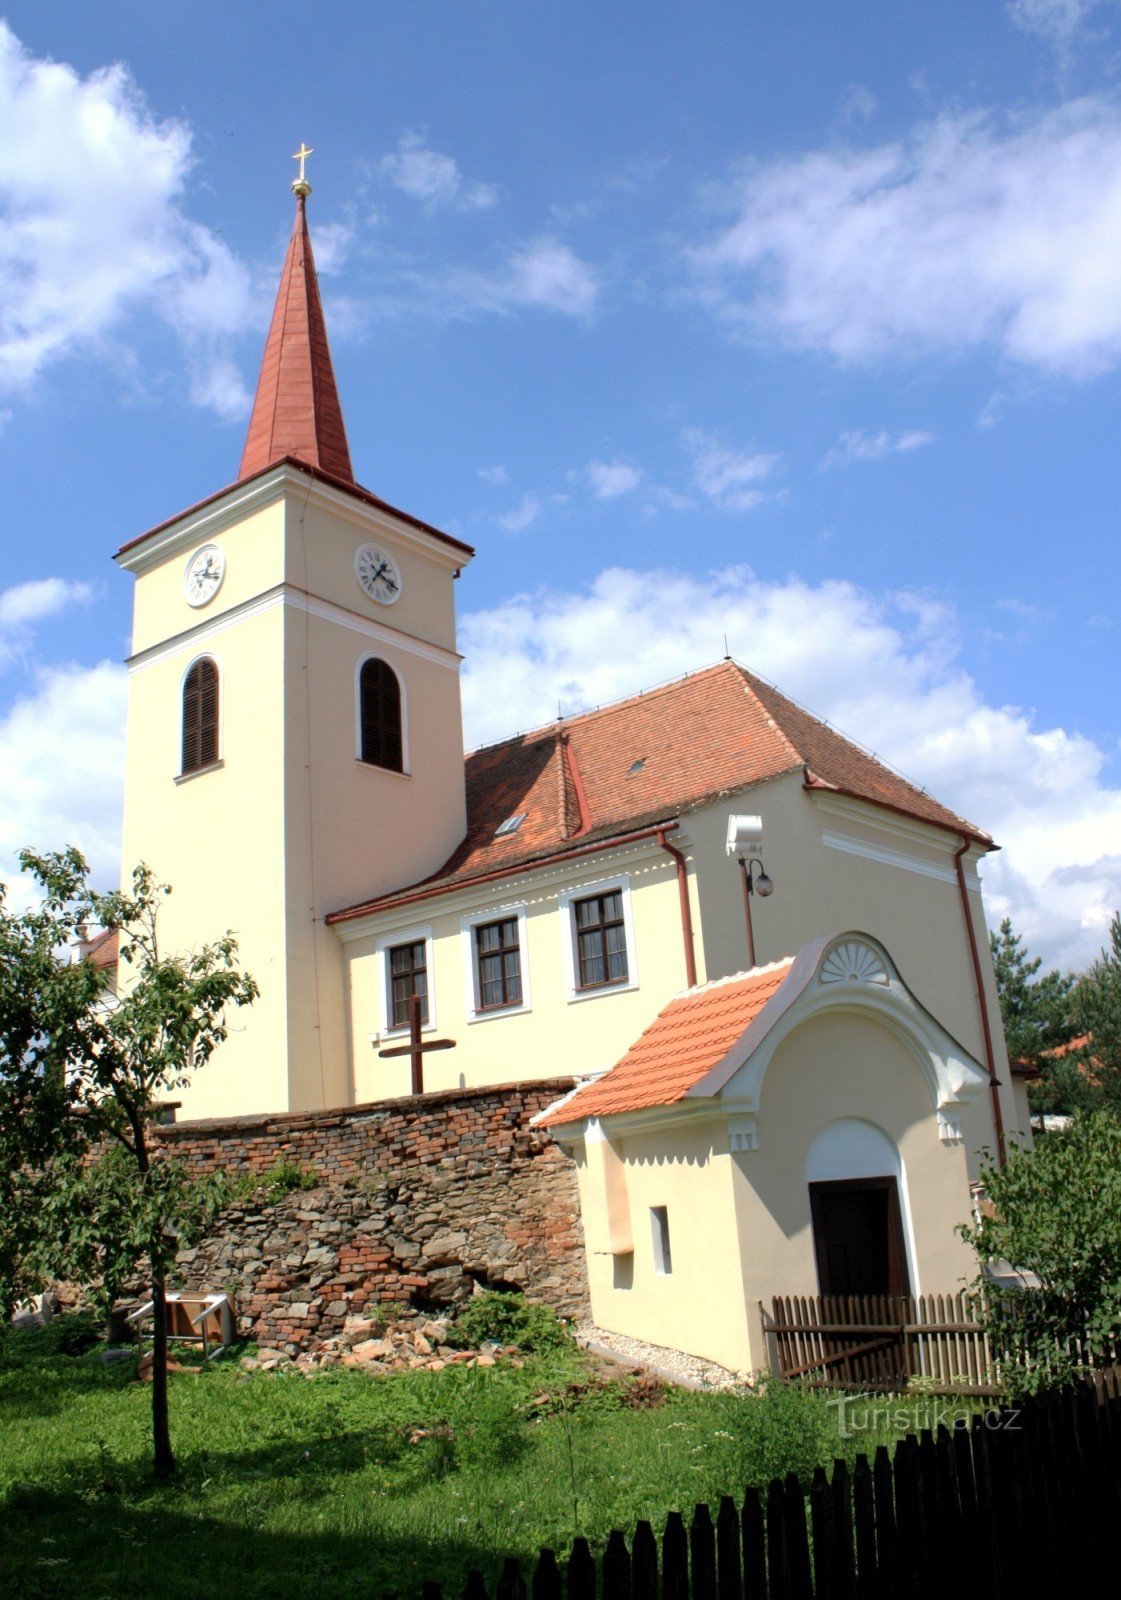 Domašov - Nhà thờ St. Lawrence